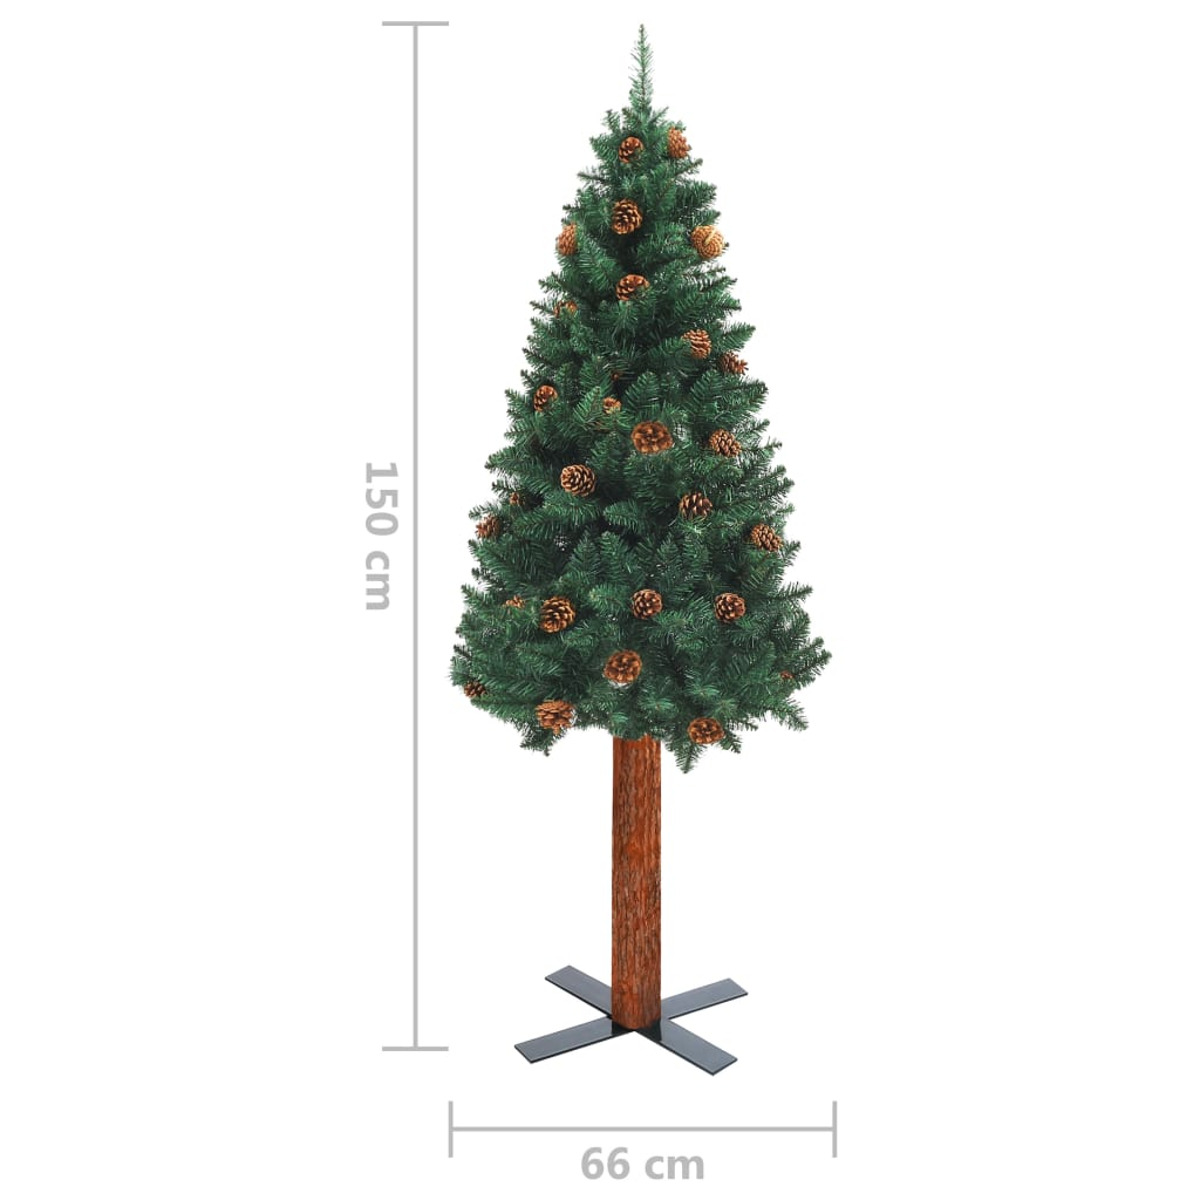 VIDAXL 3077812 Weihnachtsbaum